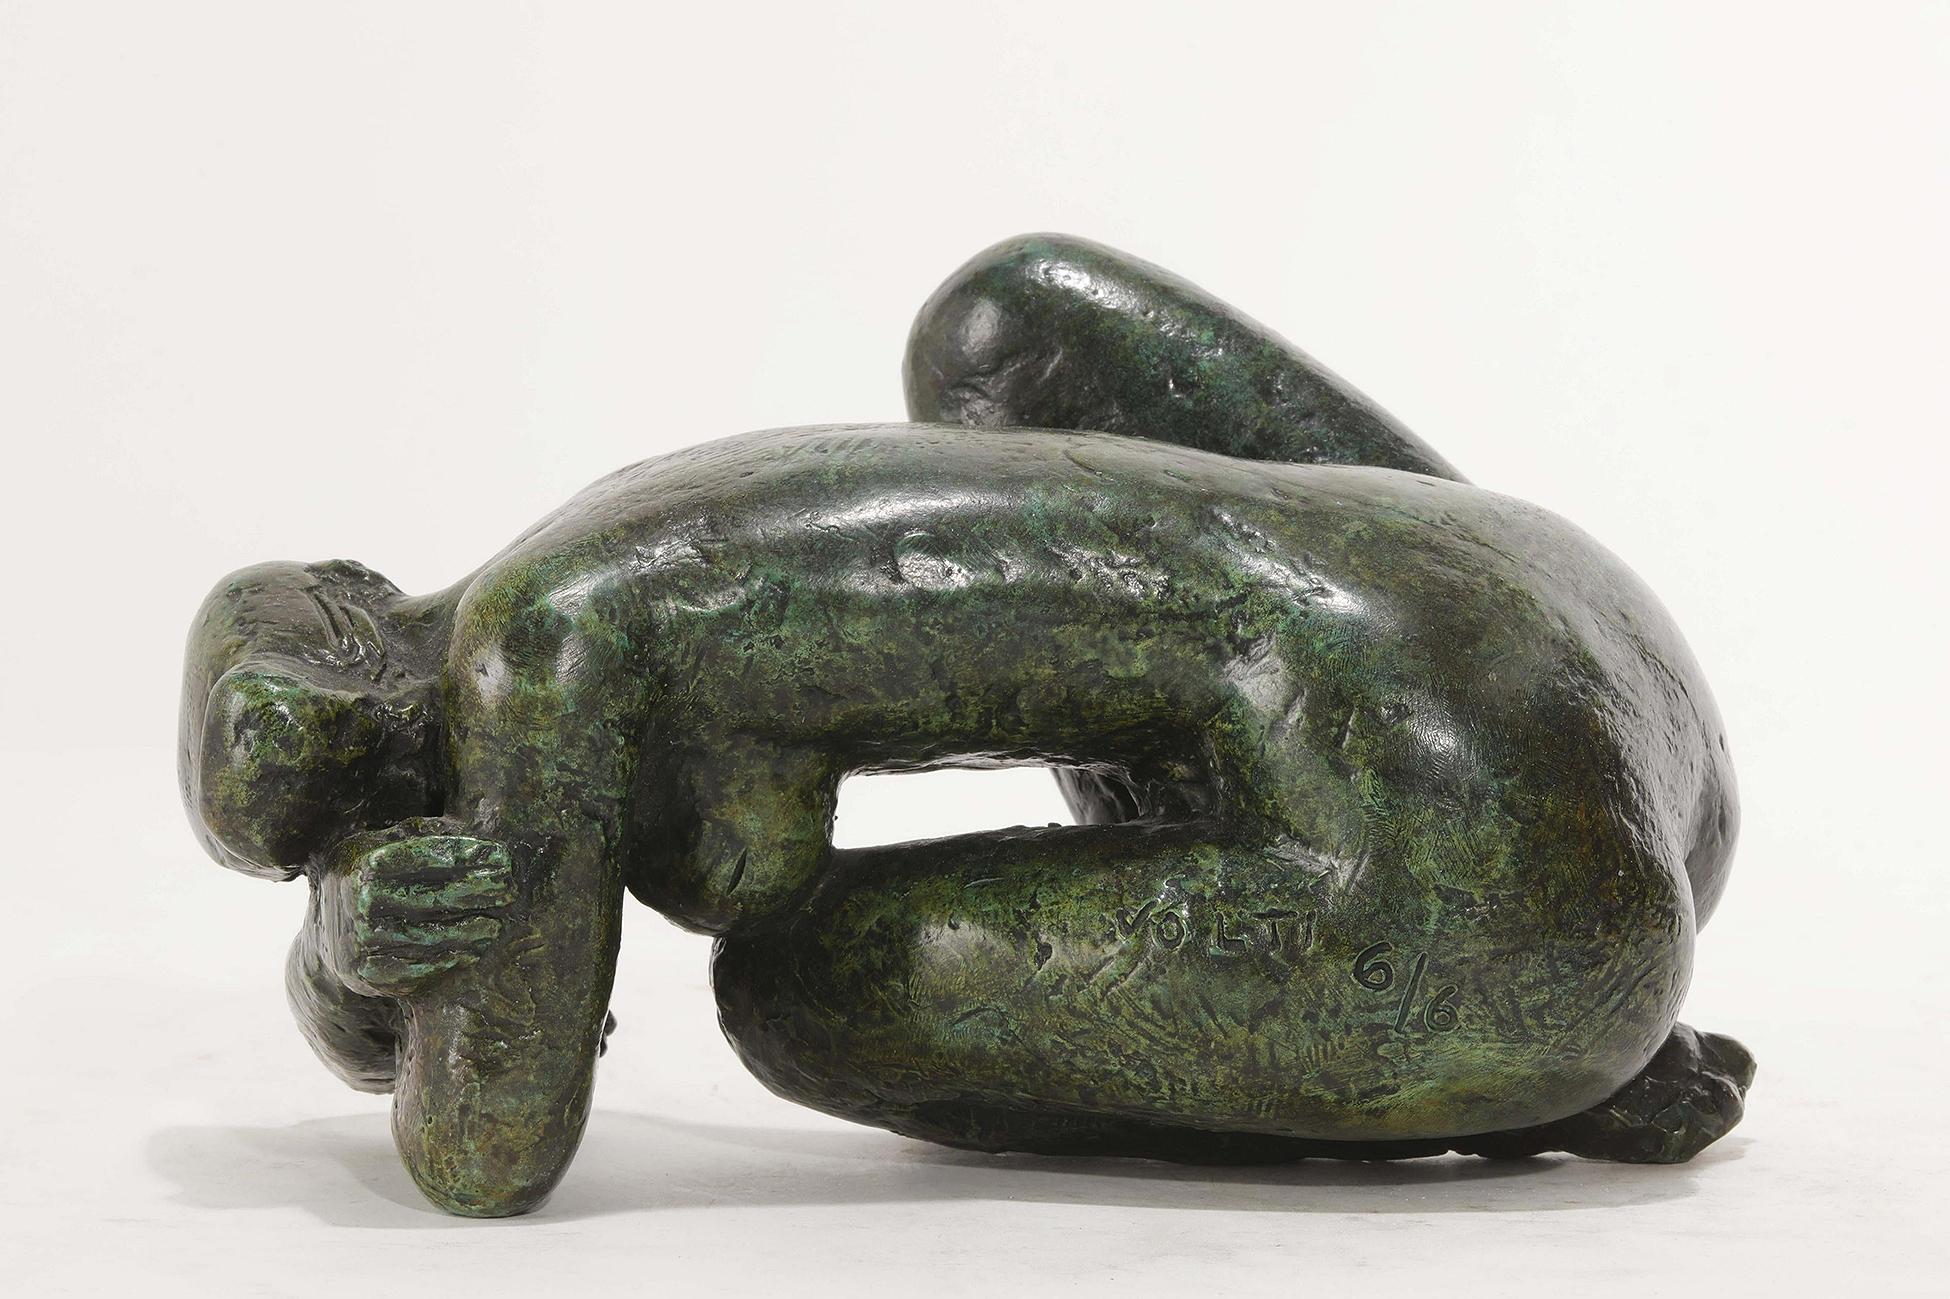 Antoniucci VOLTI ( 1915-1989 )

Original bronze sculpture with green patina depicting a nude figure.
Signed 